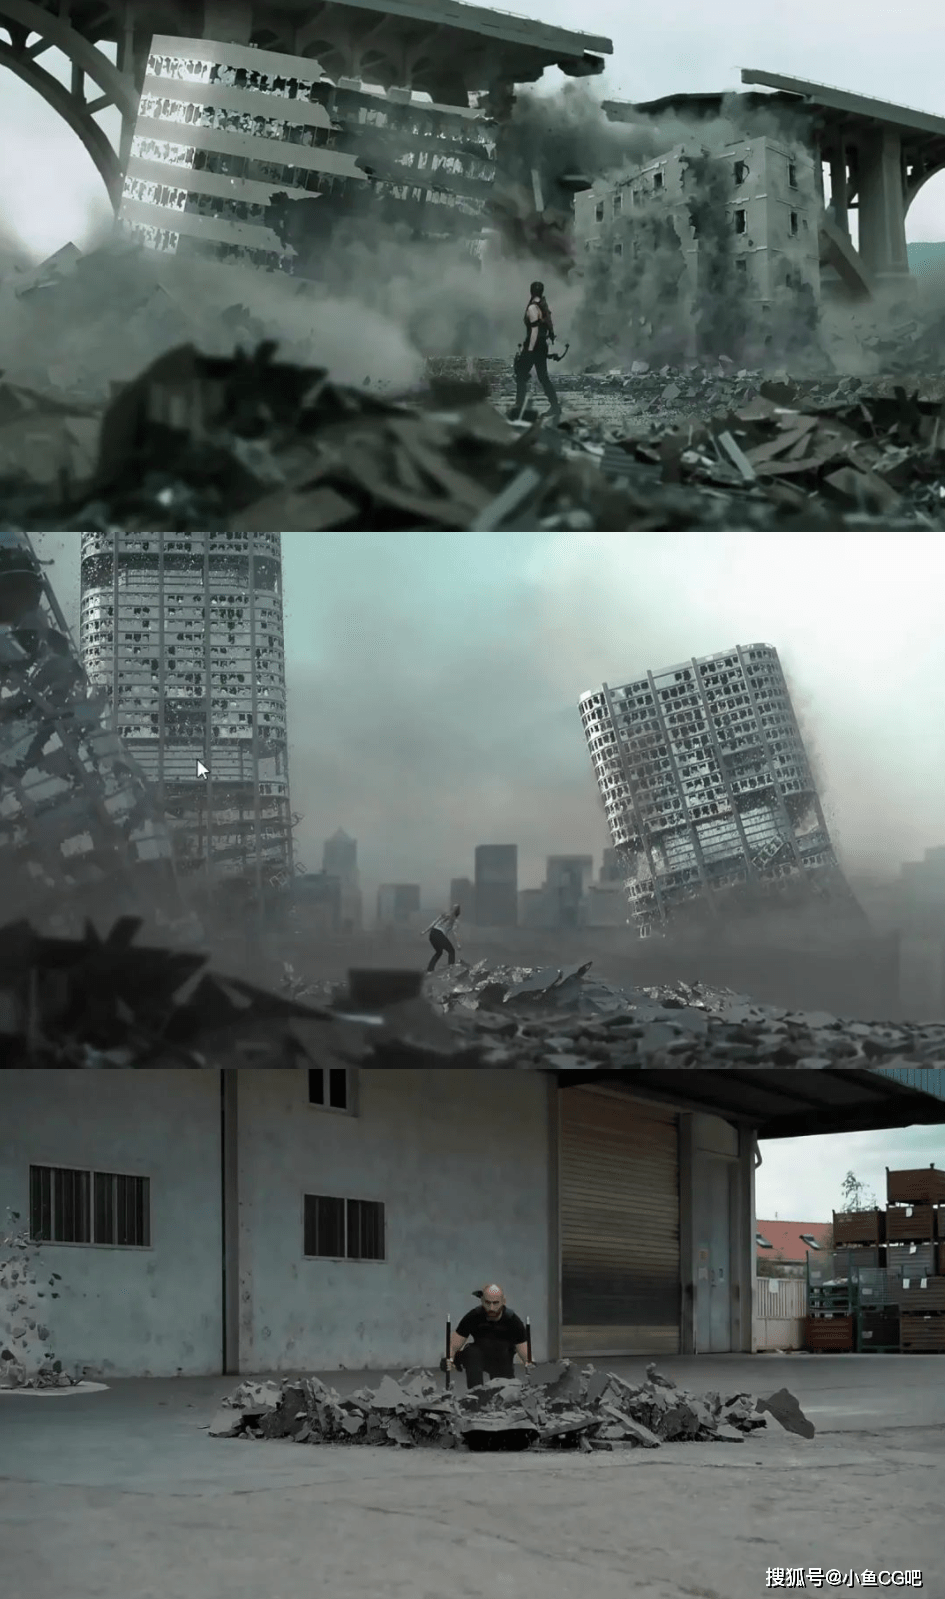 4K电影级楼房建筑倒塌地面墙汽车公共设施破碎特效